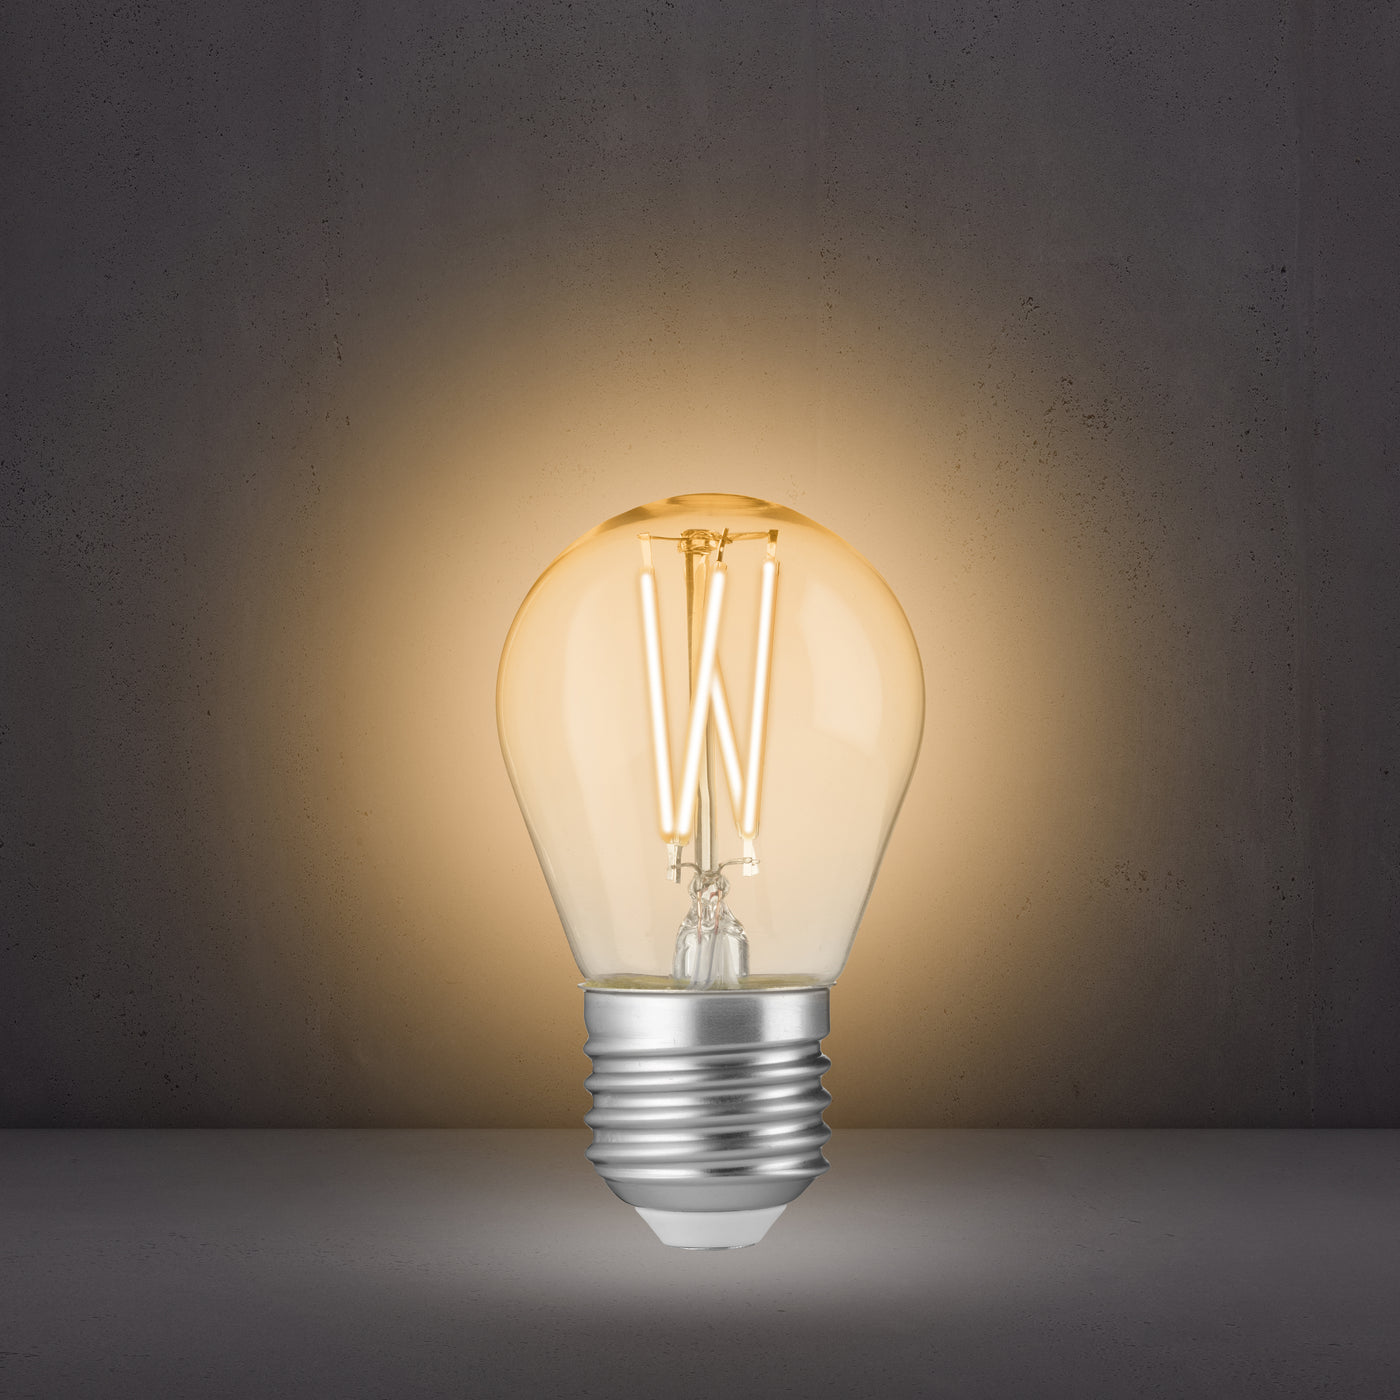 Alecto SMARTLIGHT120 - Smarte-LED-Glühlampe mit WLAN